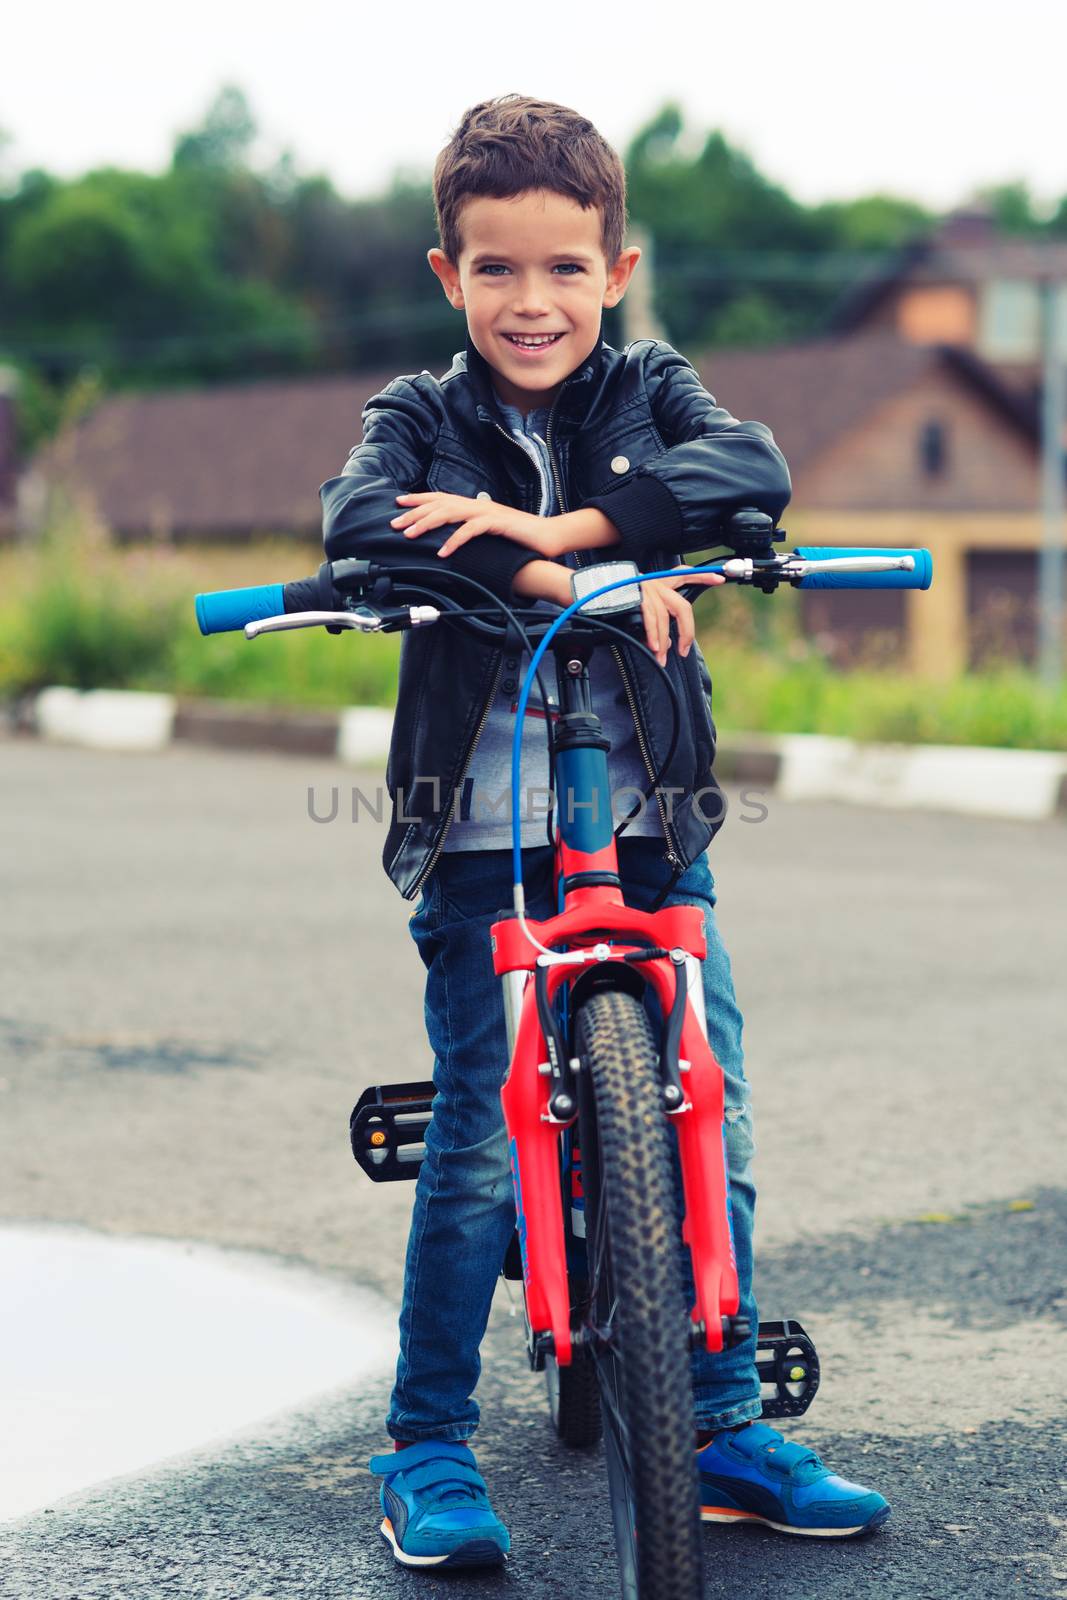 Cute boy riding bike in a city